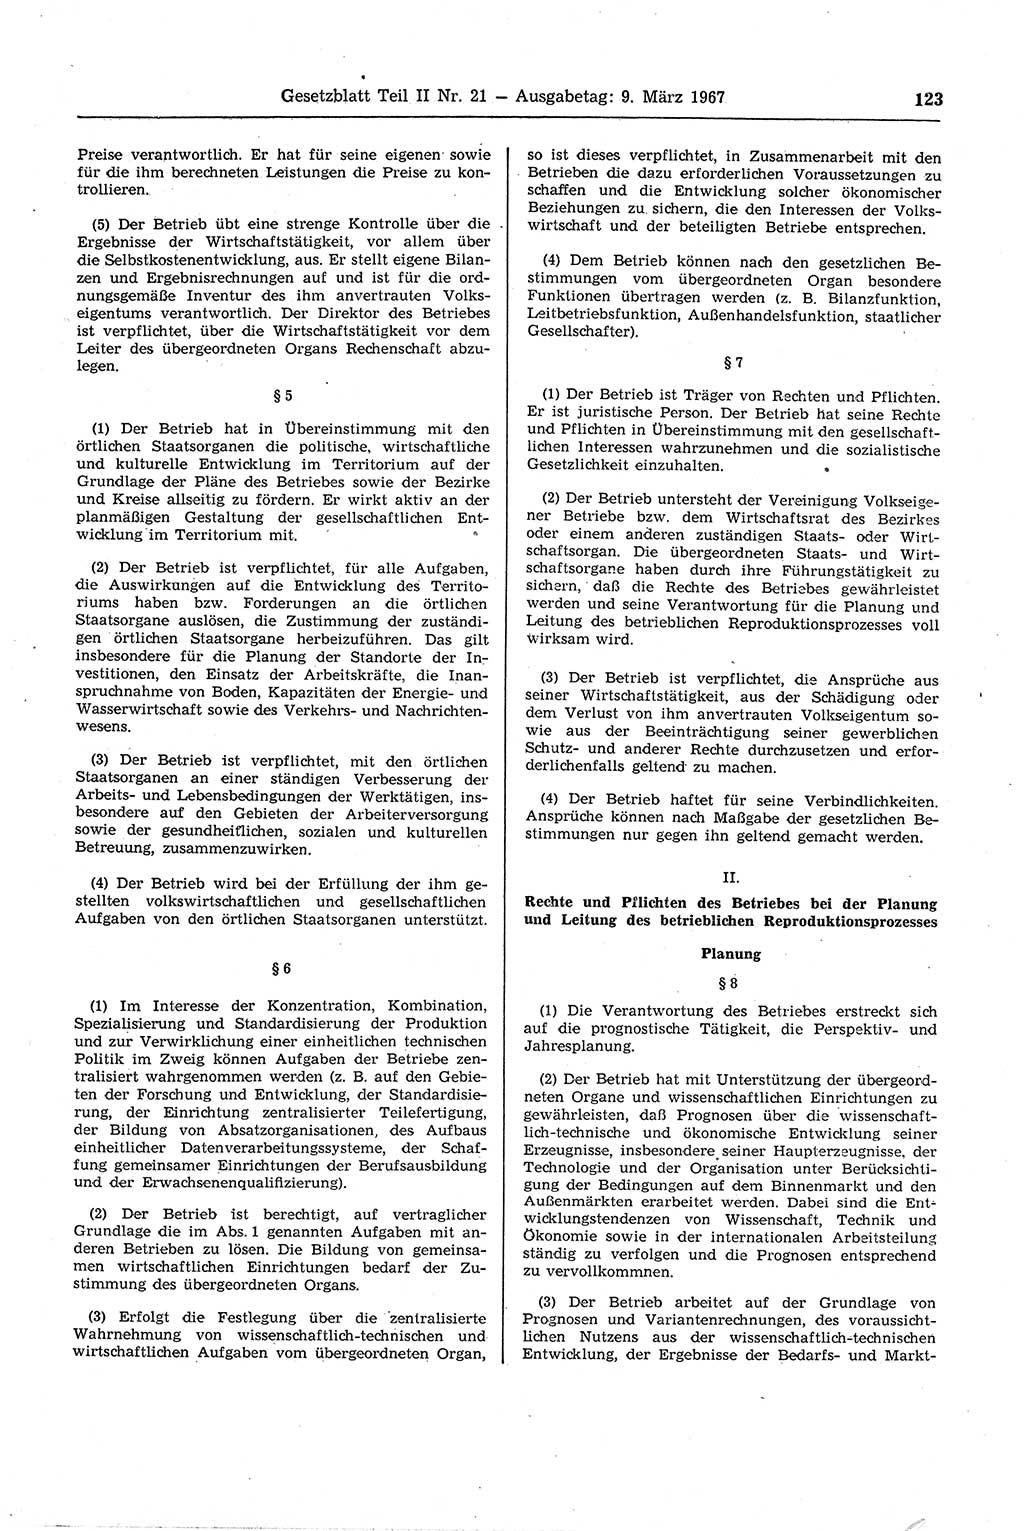 Gesetzblatt (GBl.) der Deutschen Demokratischen Republik (DDR) Teil ⅠⅠ 1967, Seite 123 (GBl. DDR ⅠⅠ 1967, S. 123)